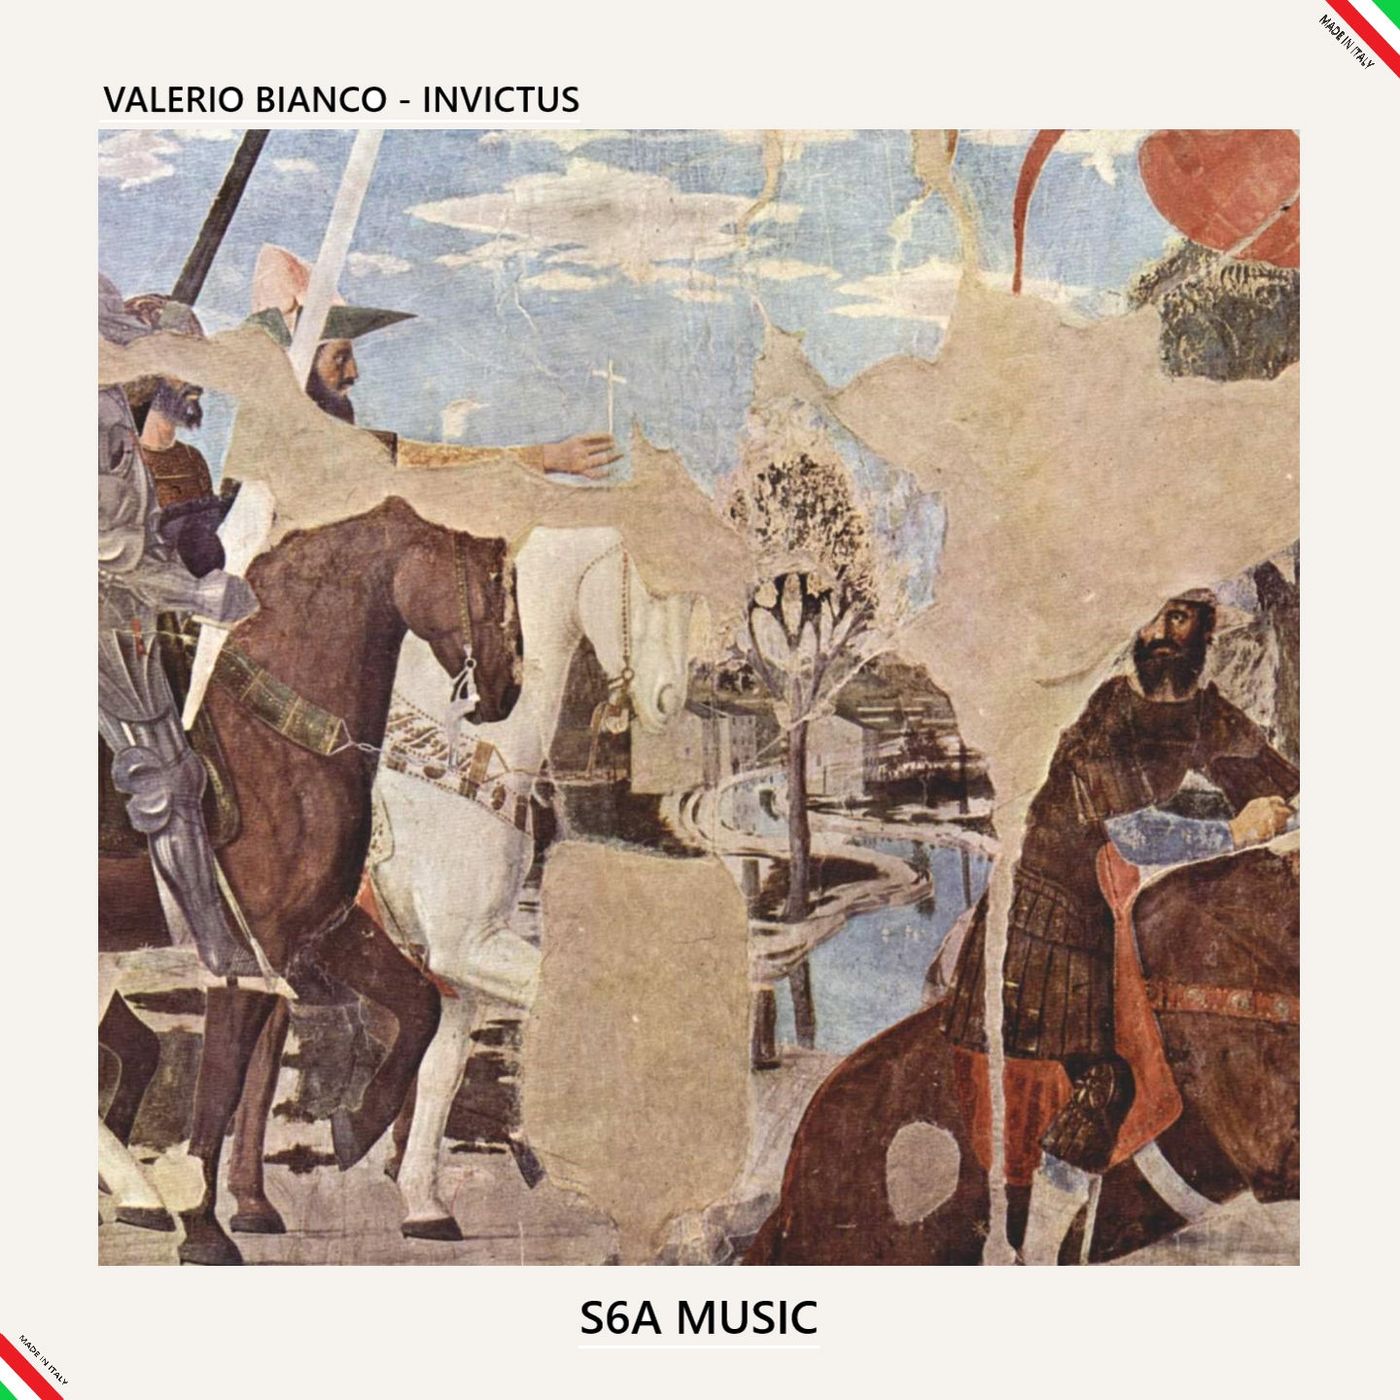 Valerio Bianco - Invictus / S6A Music